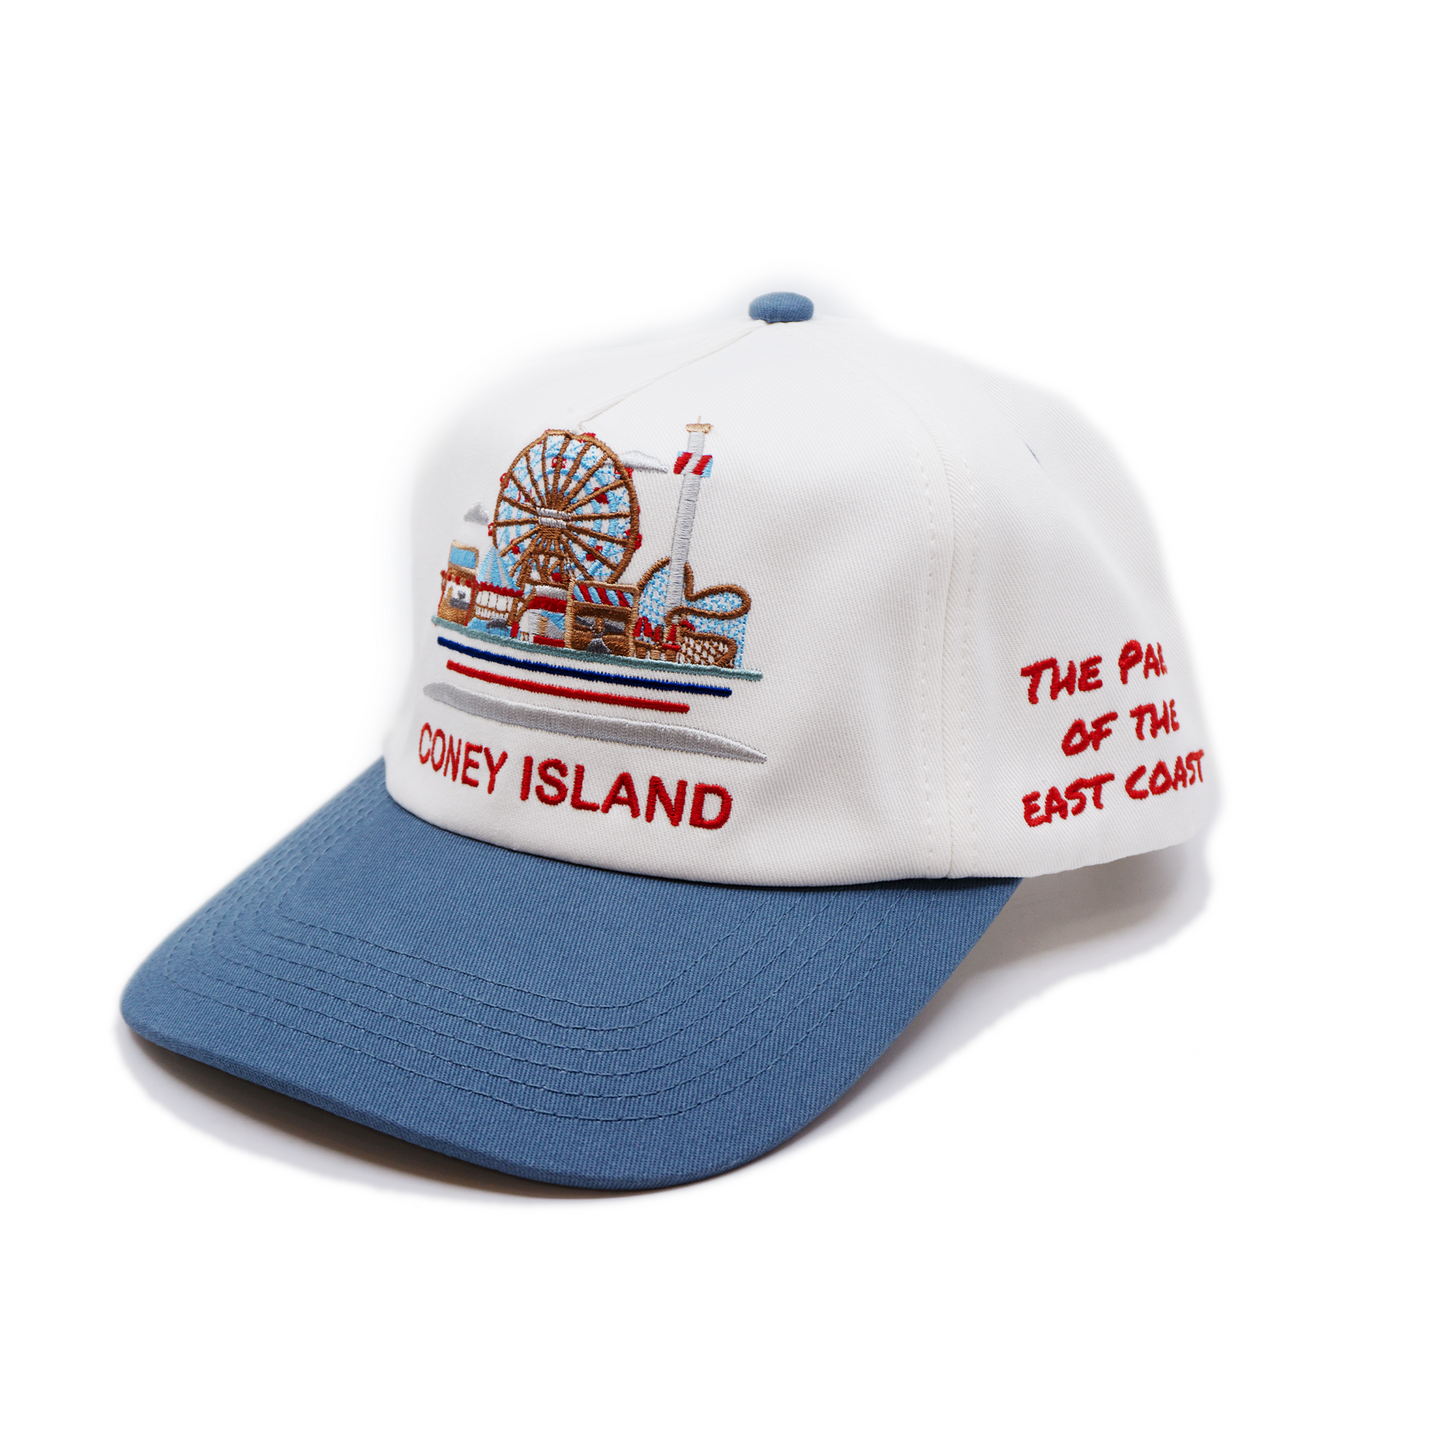 Coney Island Tourist Cap